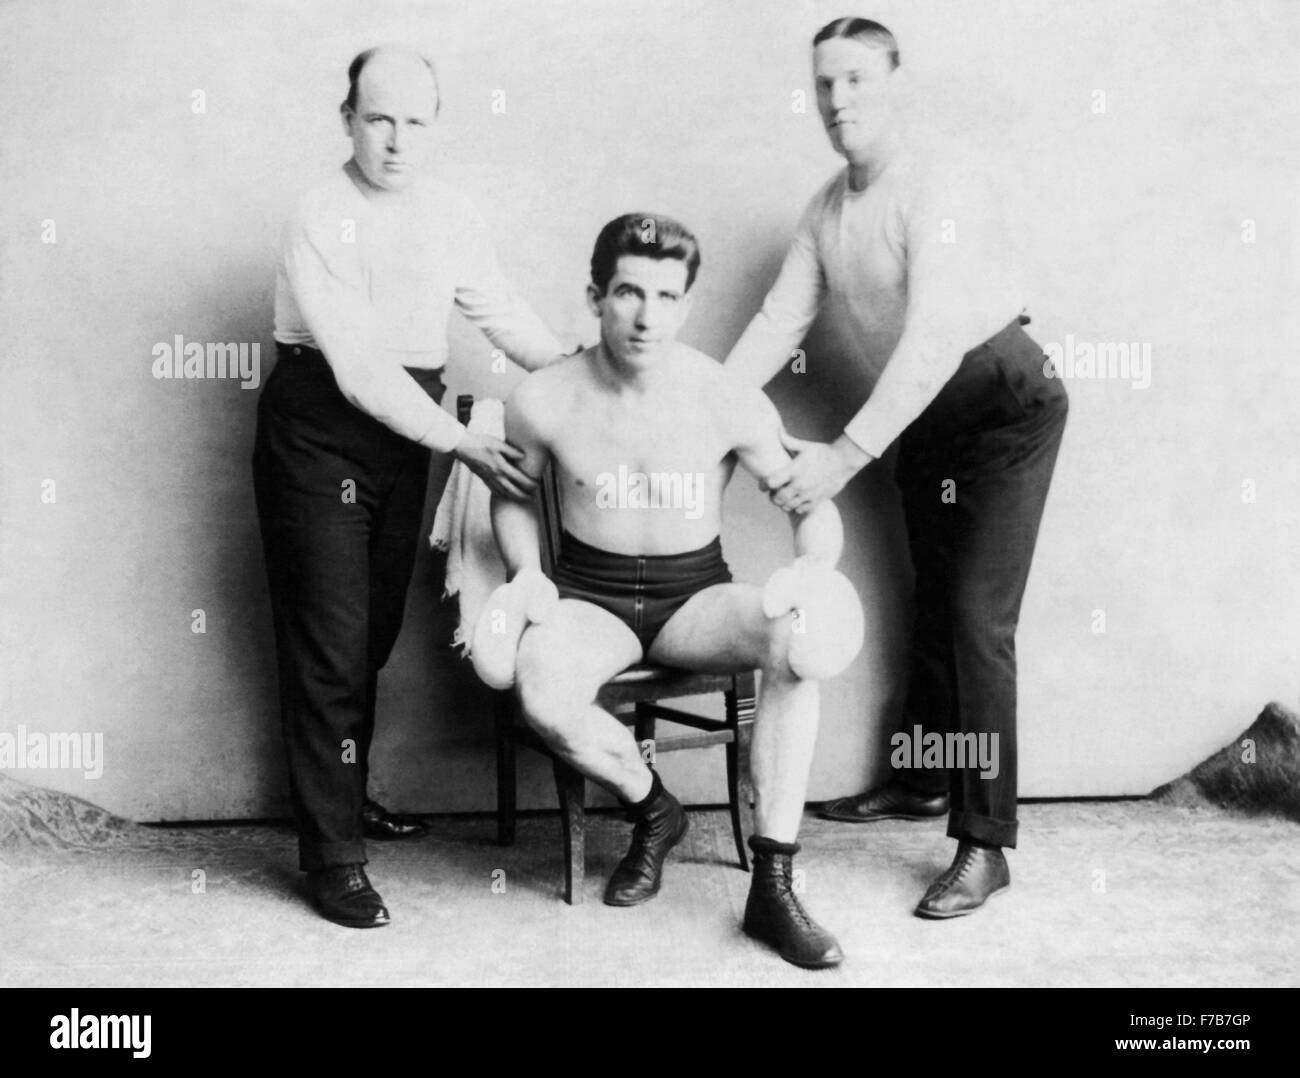 Vintage Foto von US-amerikanischer Boxer James J Corbett (1866-1933) - Weltmeister im Schwergewicht von 1892 bis 1897. Corbett, den Spitznamen "Gentleman Jim", 'Pompadour Jim' und 'Schön Jim', wird manchmal auch als "Vater des modernen Boxens" wegen der wissenschaftlichen Techniken, die er in den Ring gebracht. Stockfoto